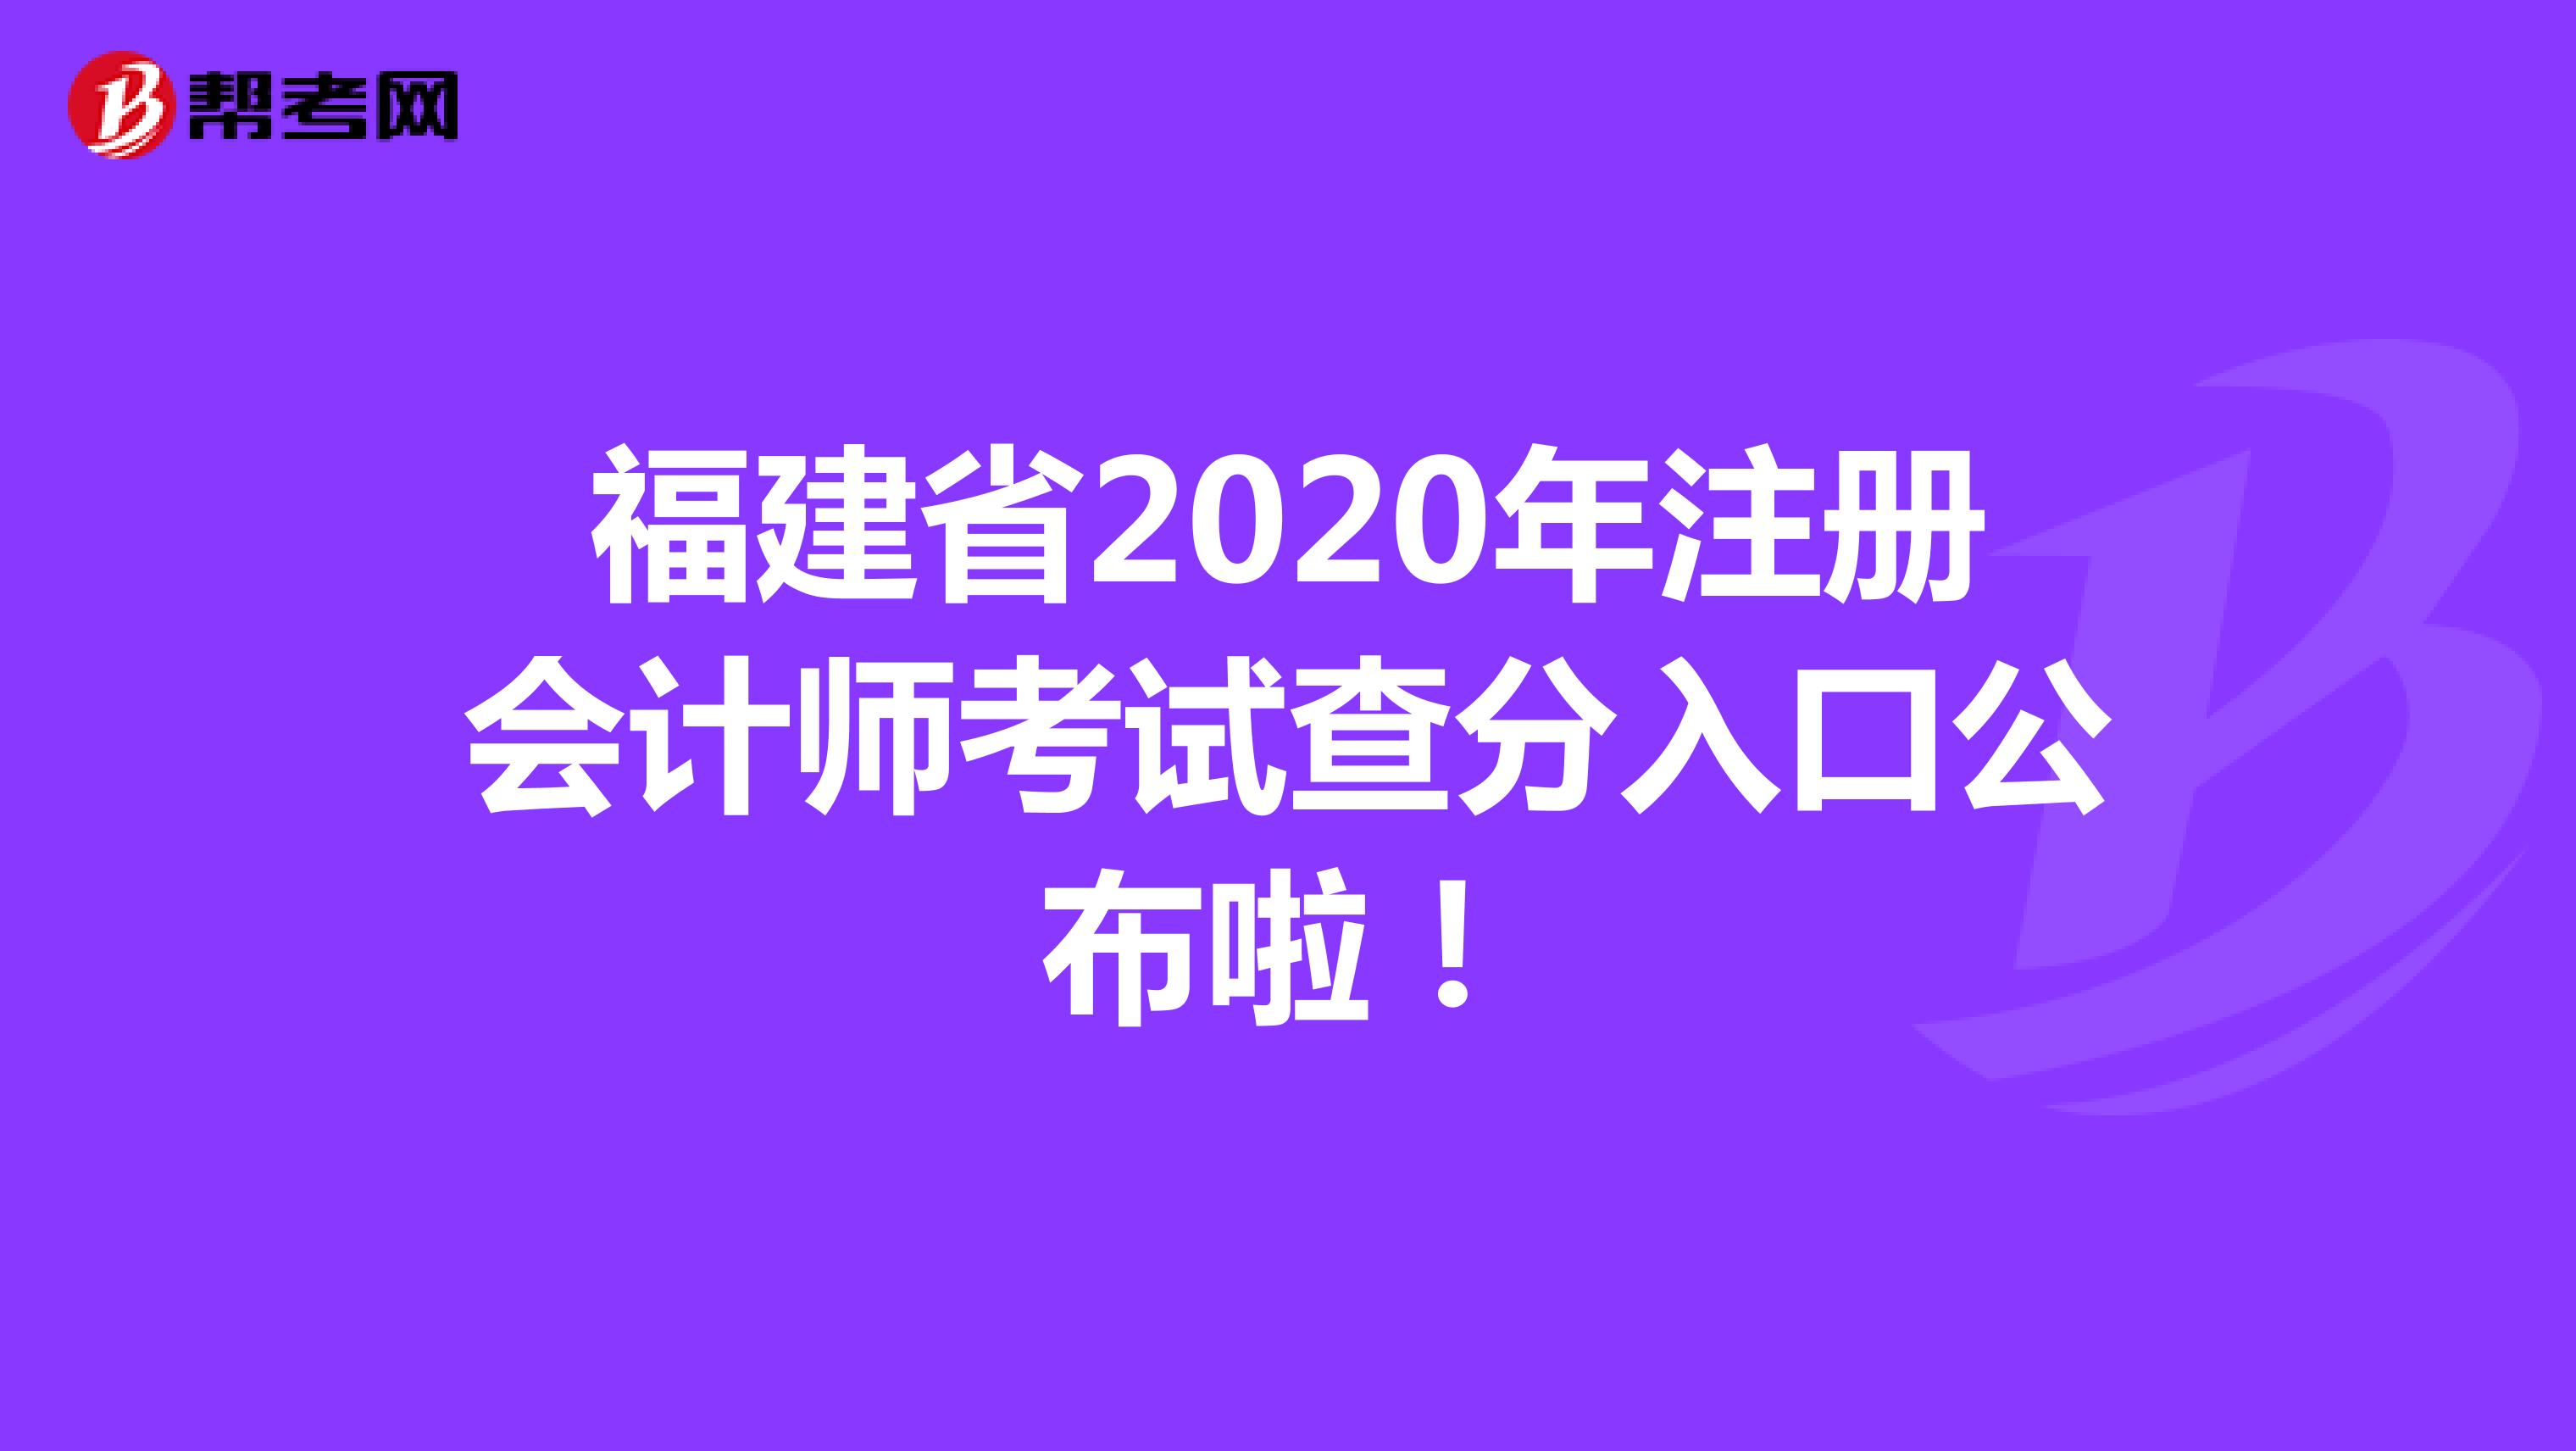 福建省2020年注册会计师考试查分入口公布啦！